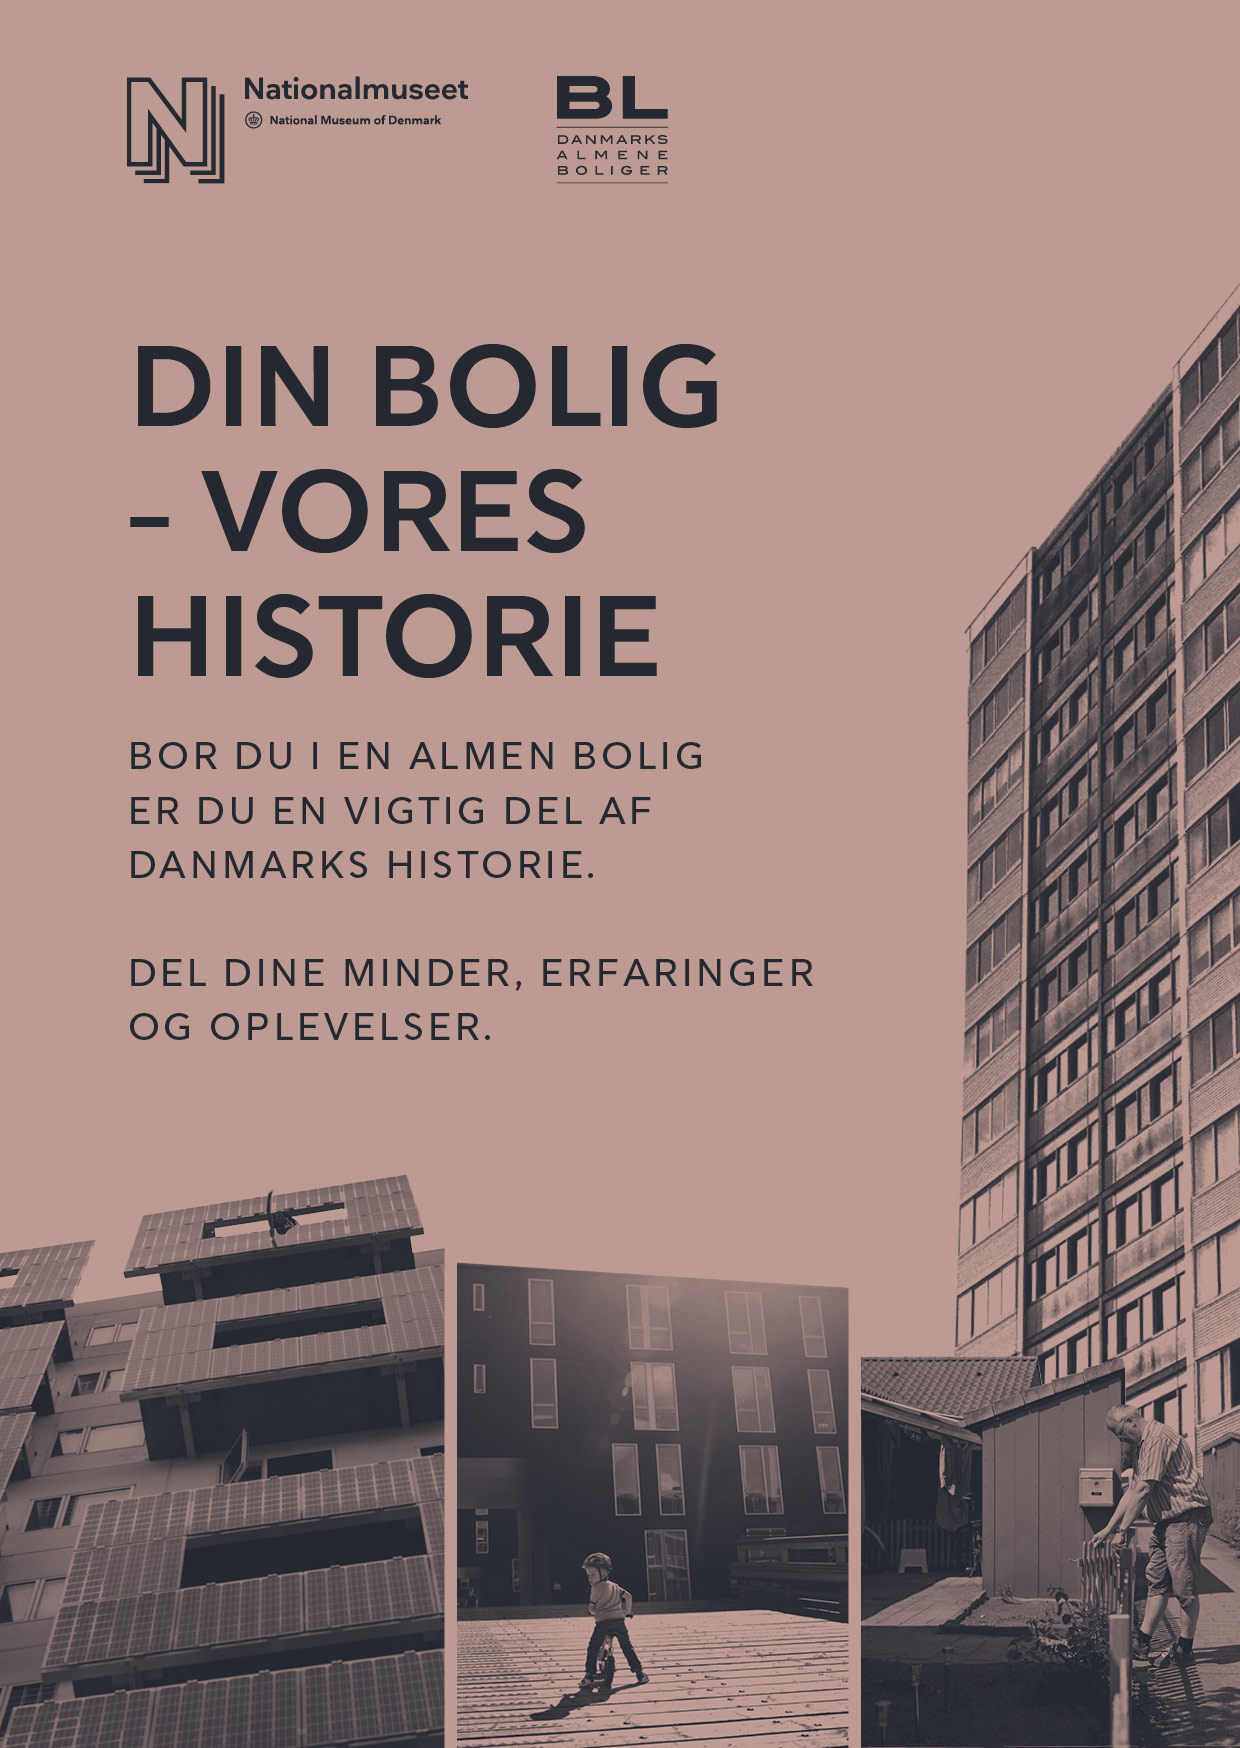 Din Bolig - vores Historie. Bor du i en almen bolig, er du en vigtig del af Danmarks historie.